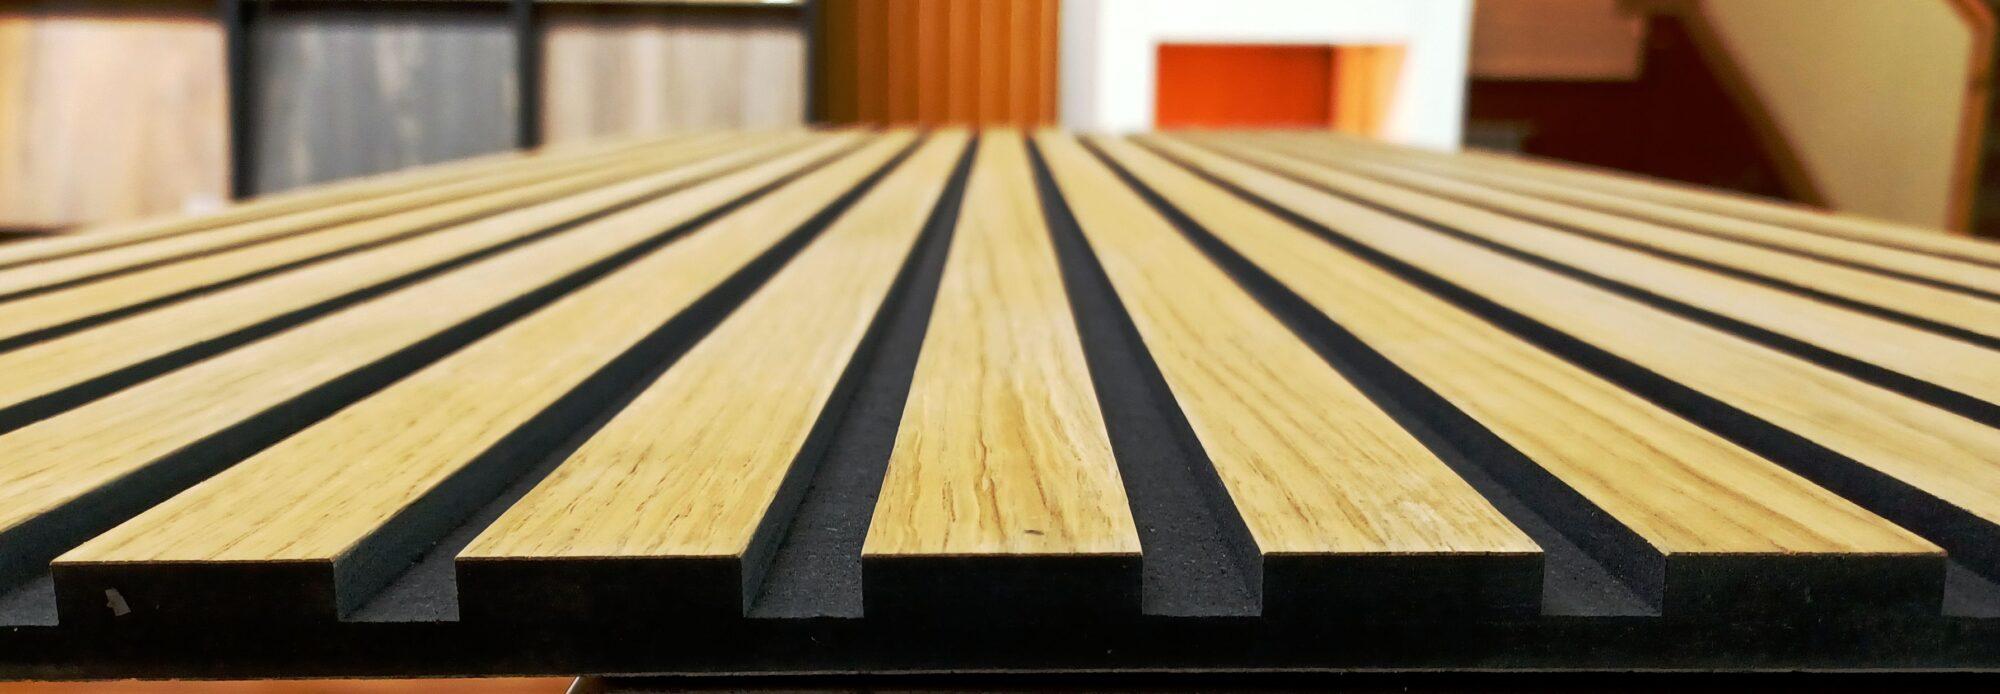 Paneles alistonados de madera para revestimientos